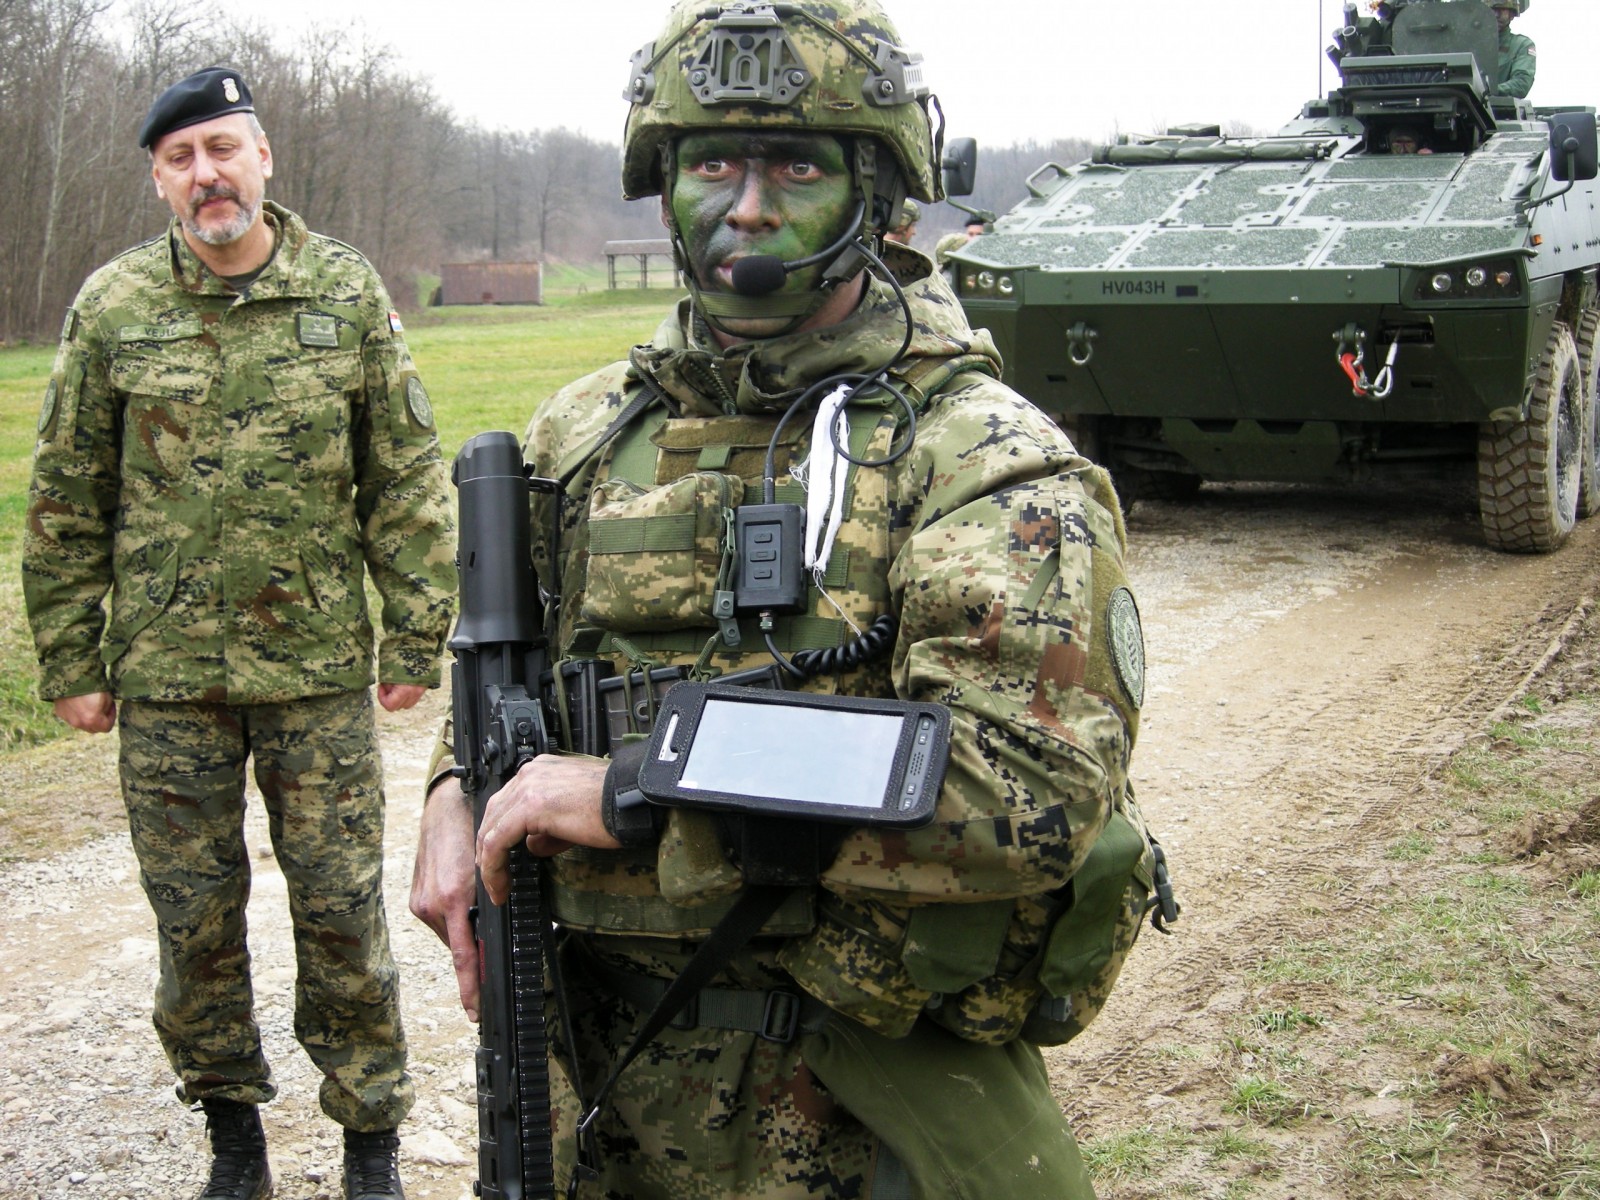 Petrinja, 06.03.2023. - Nakon pet godina razvoja, Hrvatska je vojska dobila napredni taktički radio uređaj "Takard", koji su domaće tvrtke proizvele po najvišim NATO standardima. Jedinstveni proizvod, koji su uz potporu i u suradnji s Ministarstvom obrane i Oružanim snagama RH razvile tvrtke RIZ - Profesionalne elektronike d.o.o. i Impel Groupa d.o.o., u ponedjeljak je predstavljen na vojnoj pokaznoj taktičkoj vježbi mehaniziranog voda na poligonu petrinjske vojarne "Pukovnik Predrag Matanović", uz nazočnost ministra obrane Marija Banožića i načelnika Glavnog stožera OSRH admiraal Roberta Hranja. foto HINA/ Zdravko STRIŽIĆ/ ml